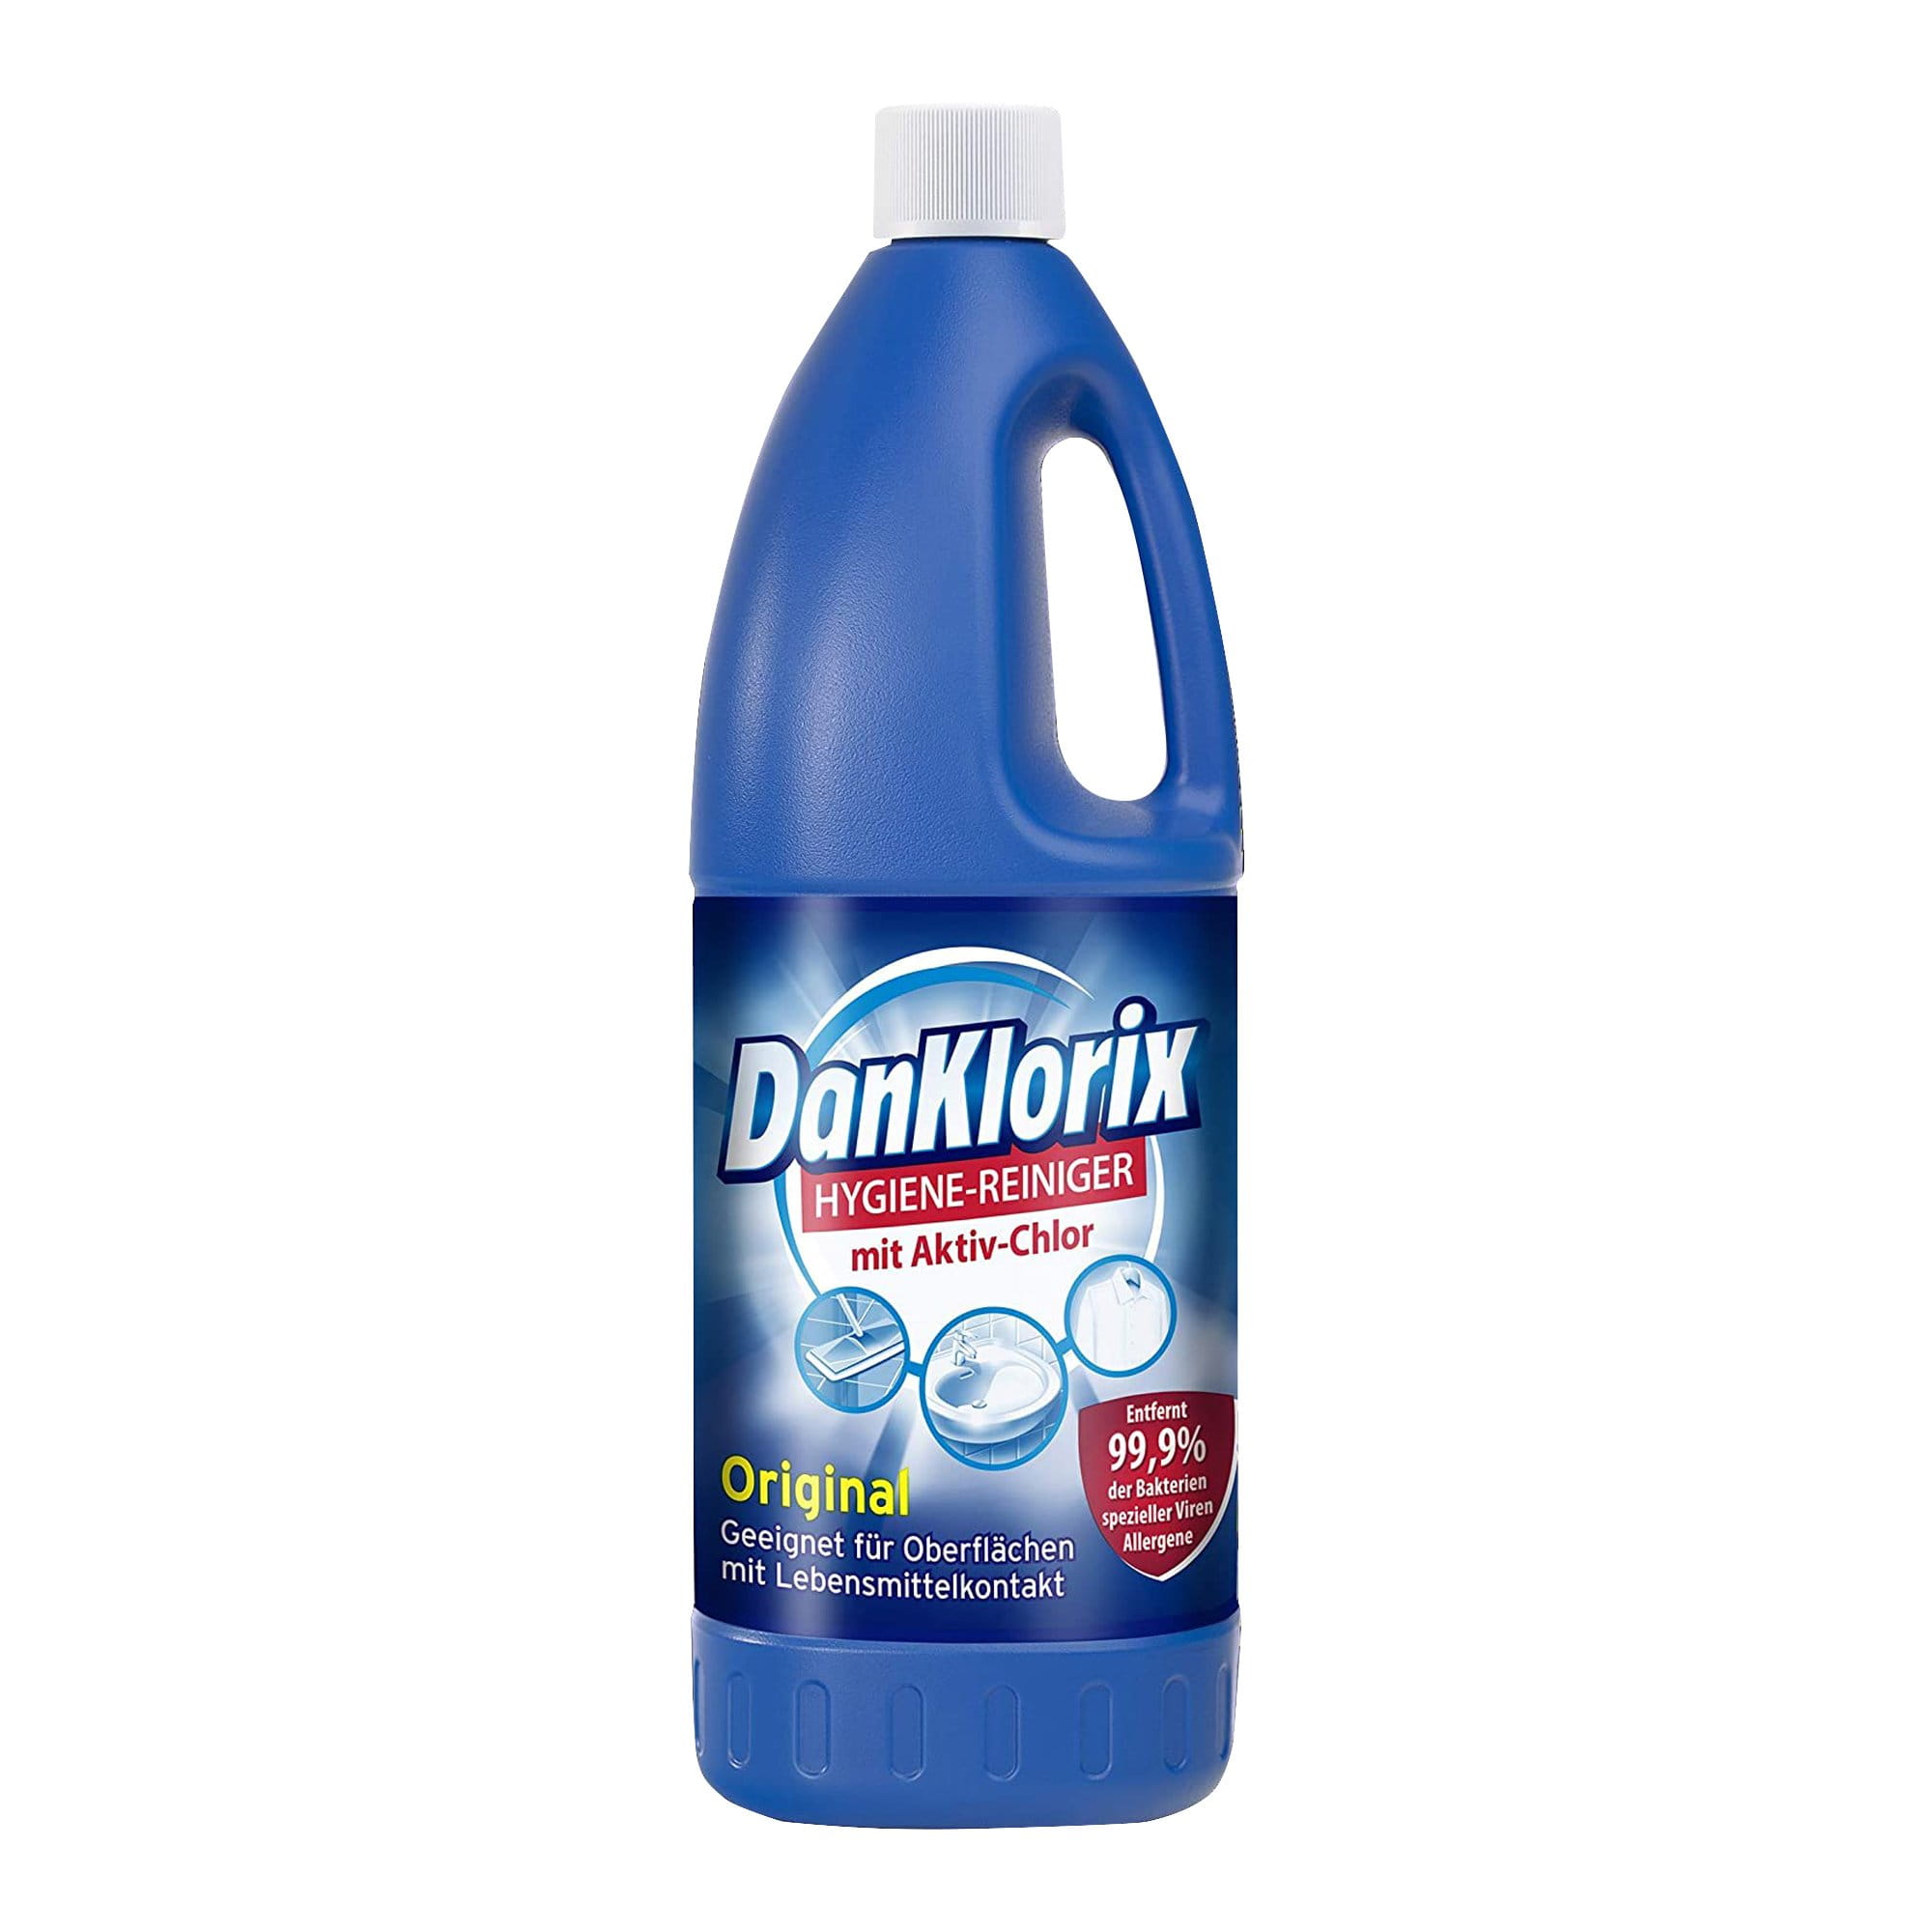 DanKlorix Hygienereiniger Original 1,5 Liter Flasche 2113534_1